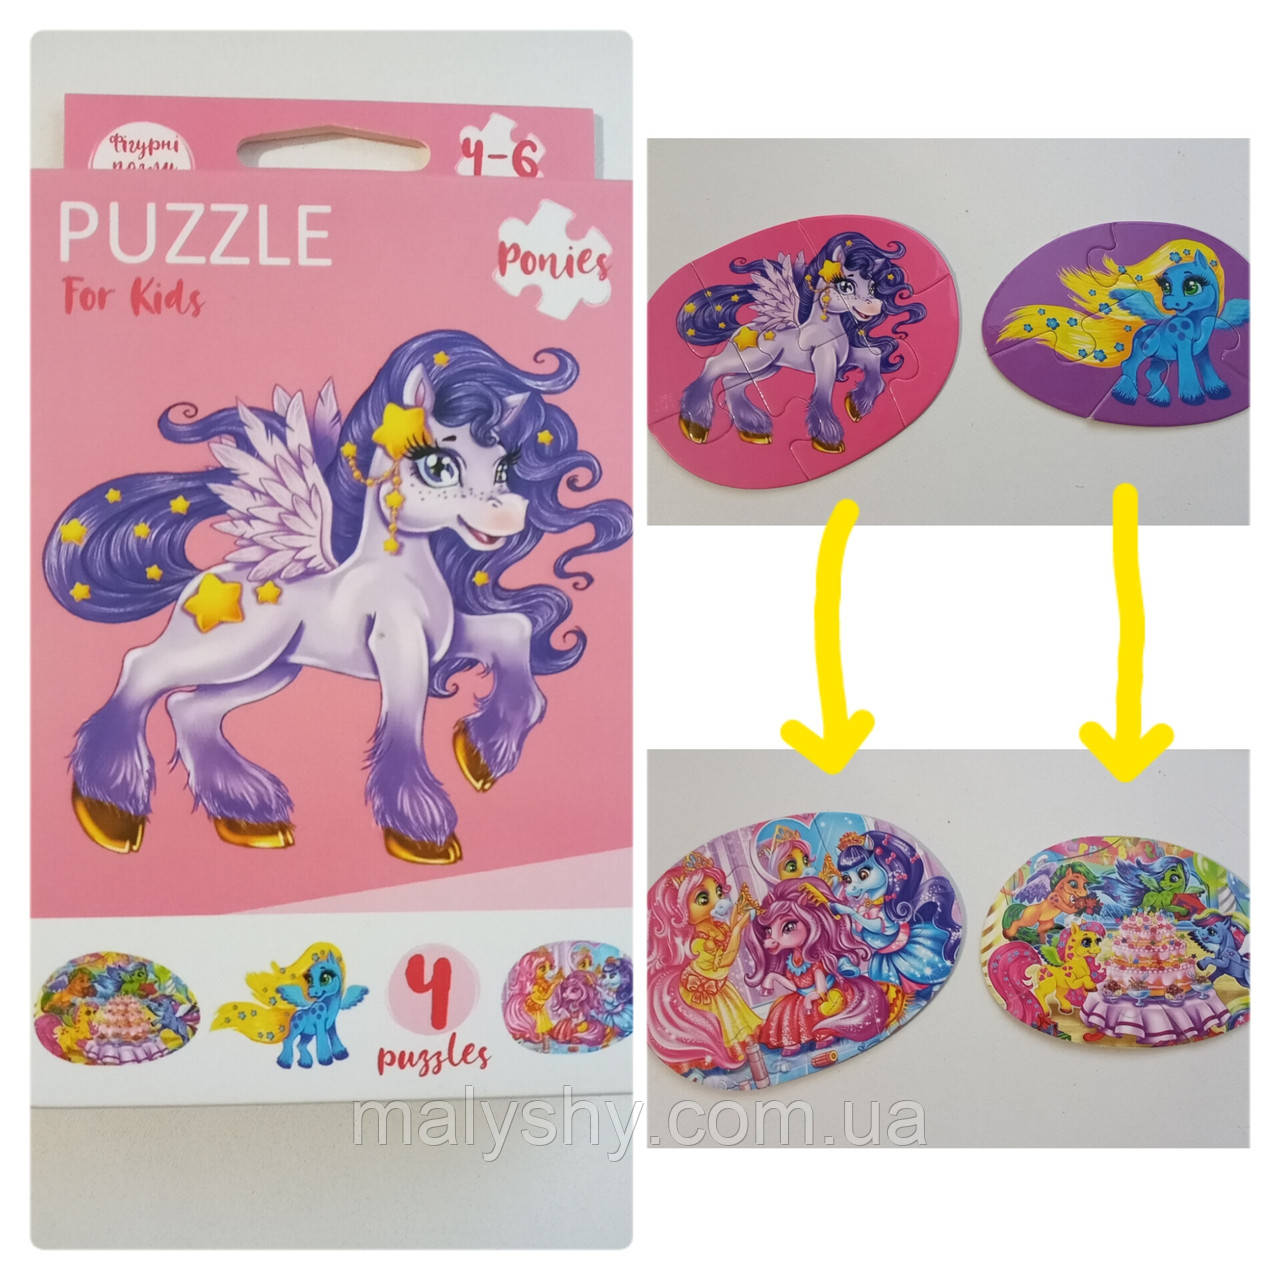 Развиваючі пазли для маленьких дітей "Puzzle For Kids" / Ponies